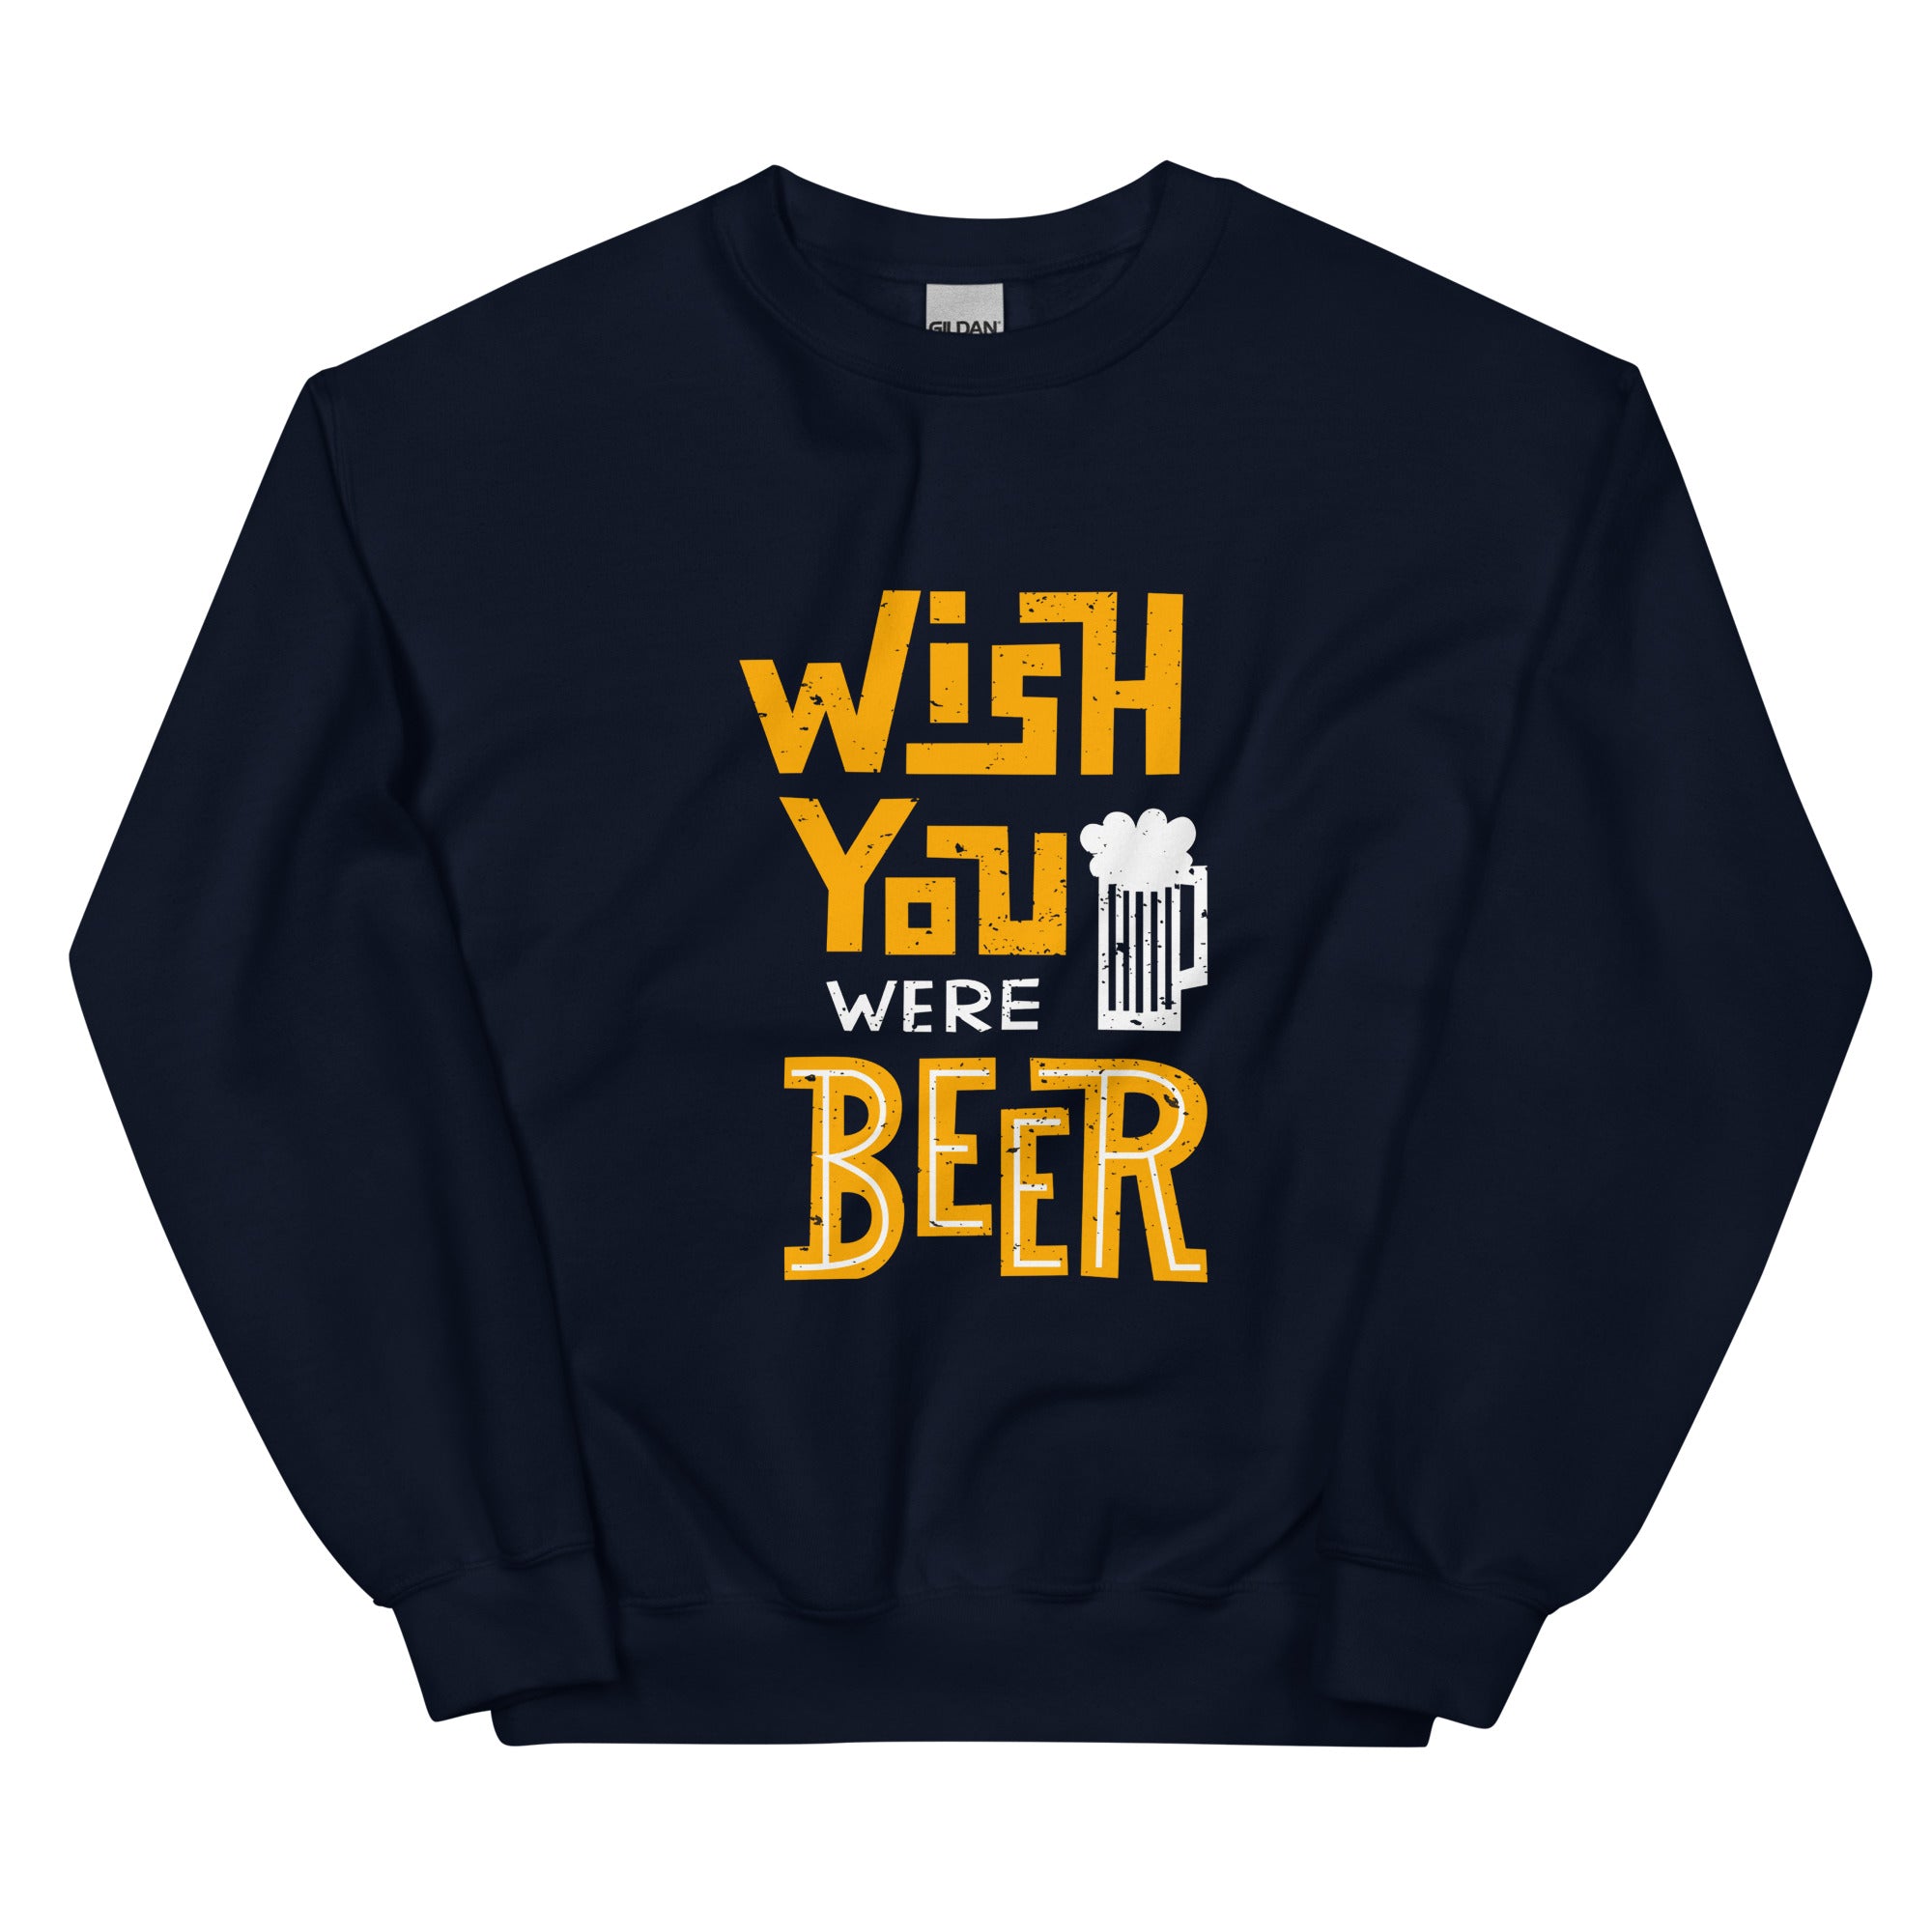 Beer Sweatshirt for women